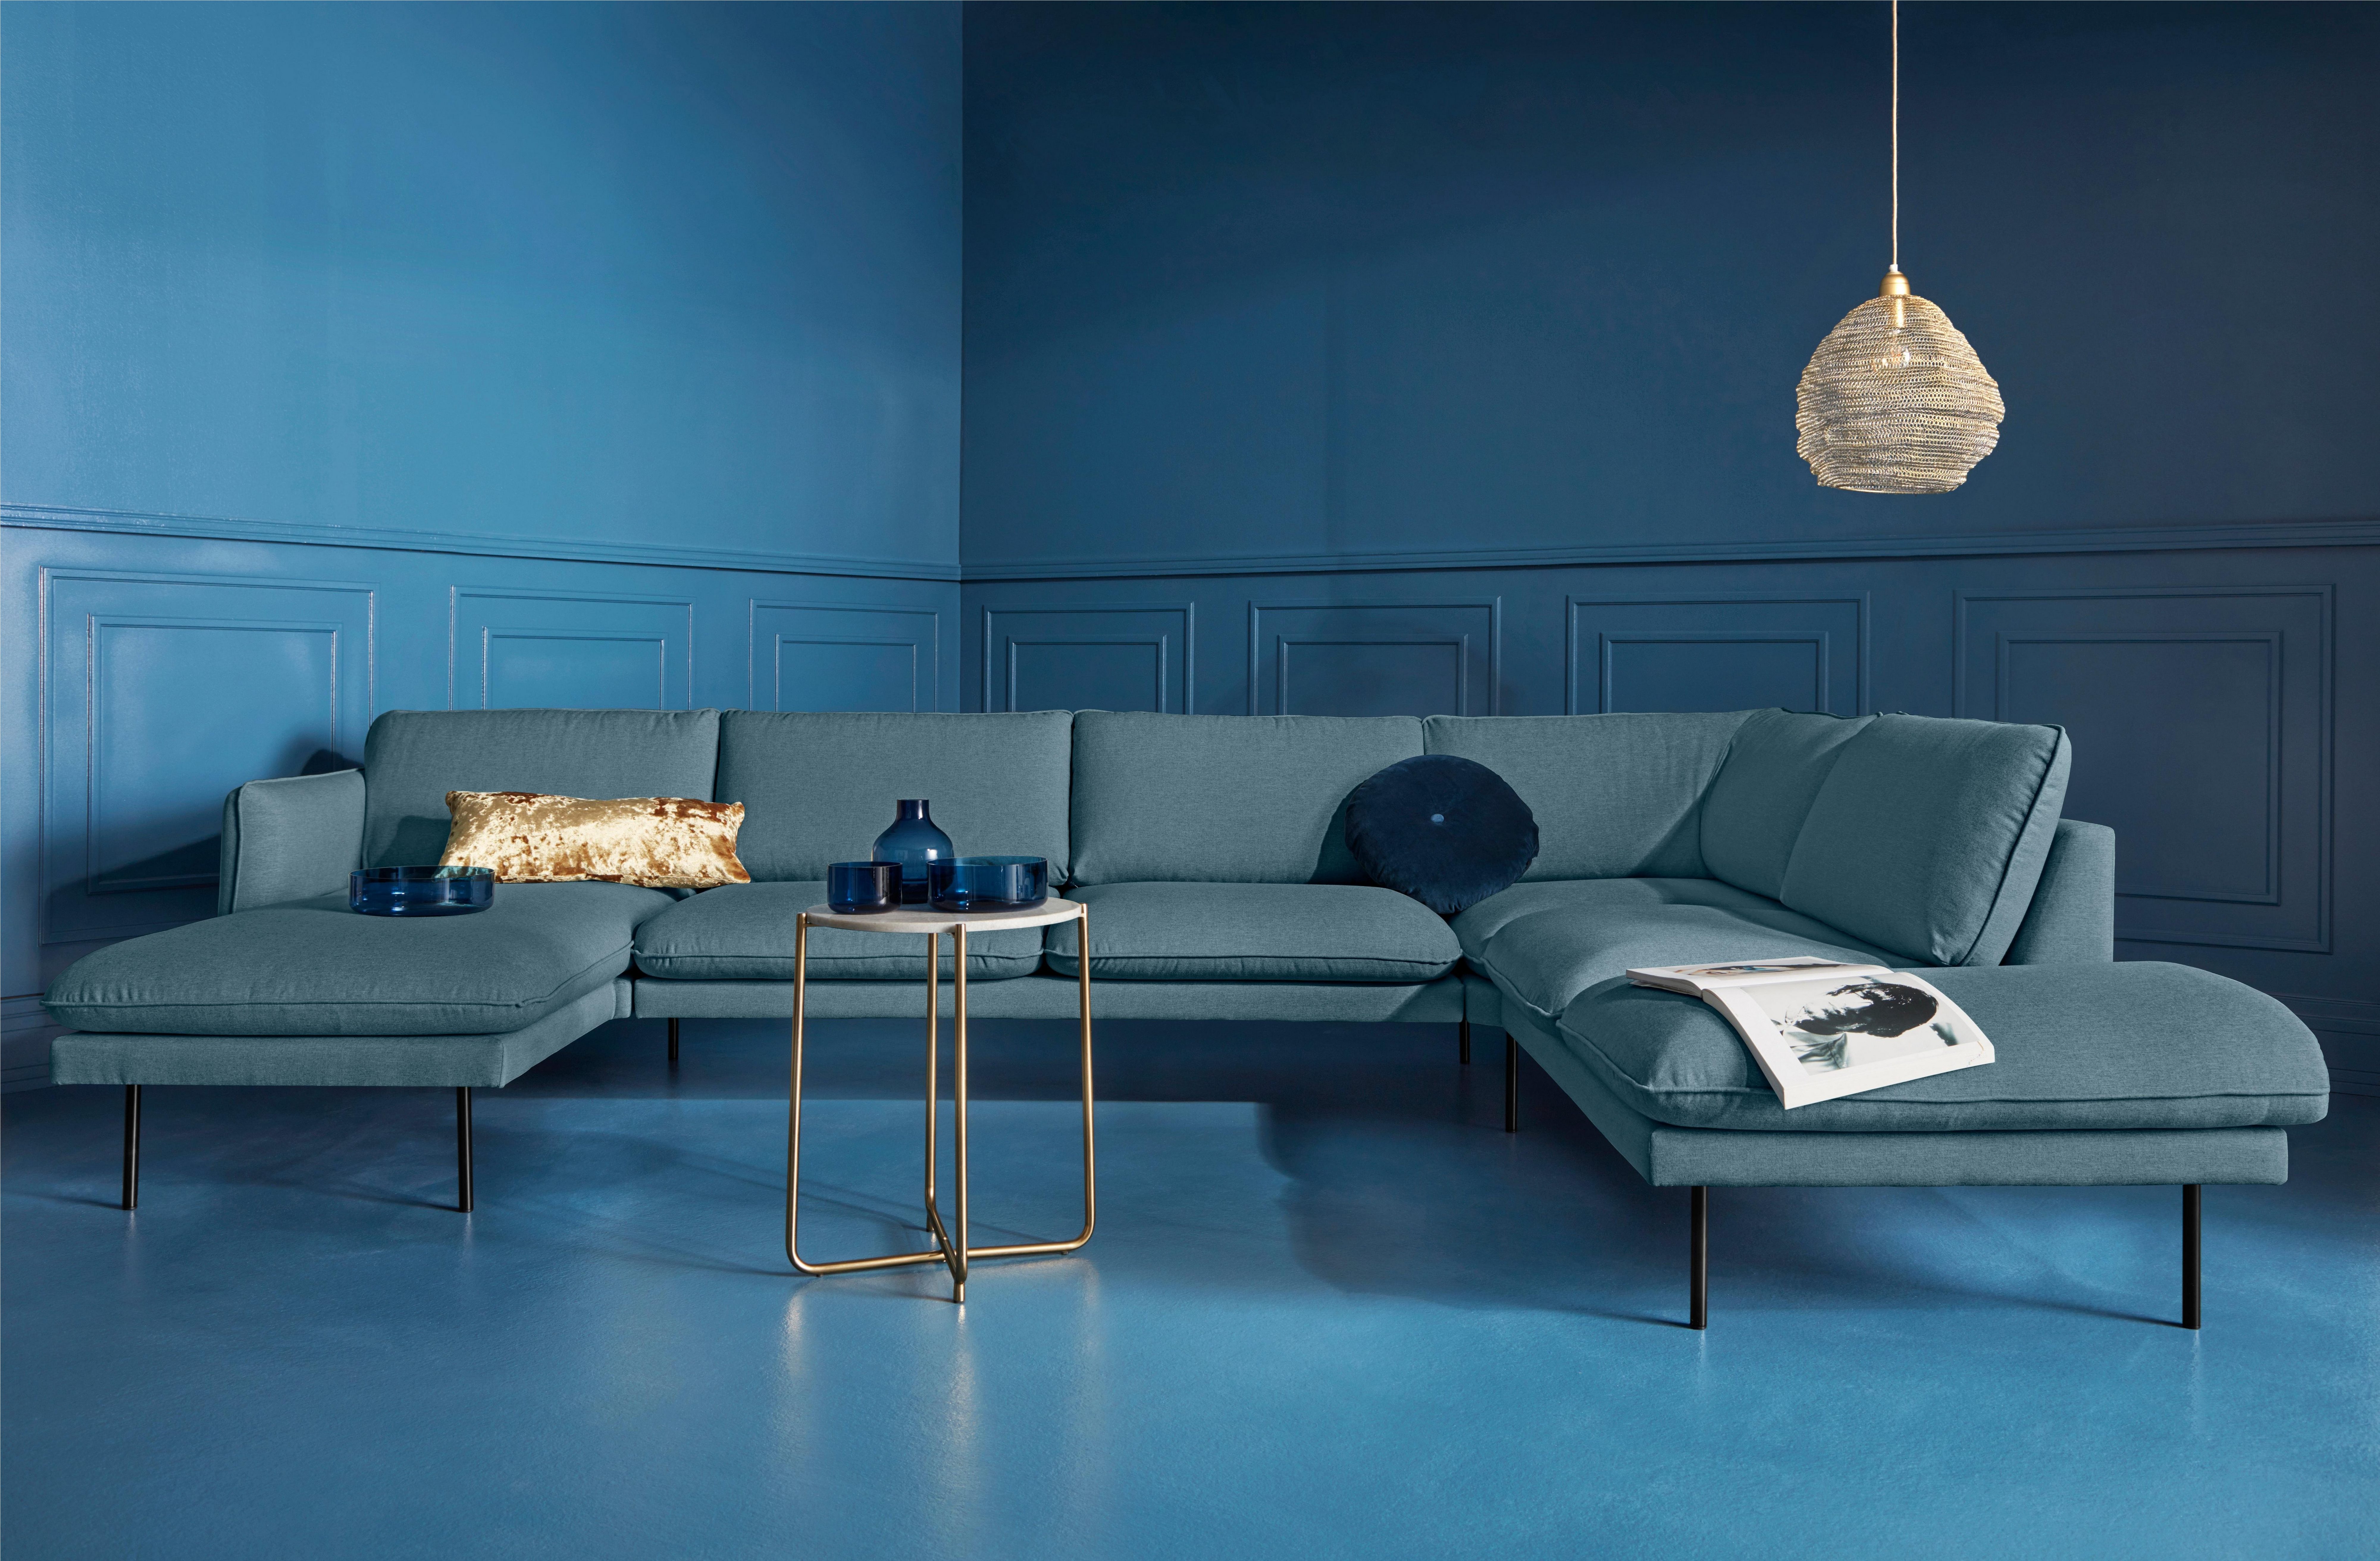 COUCH ♥ Zithoek Levon in een moderne look, met metalen poten, couch favorieten